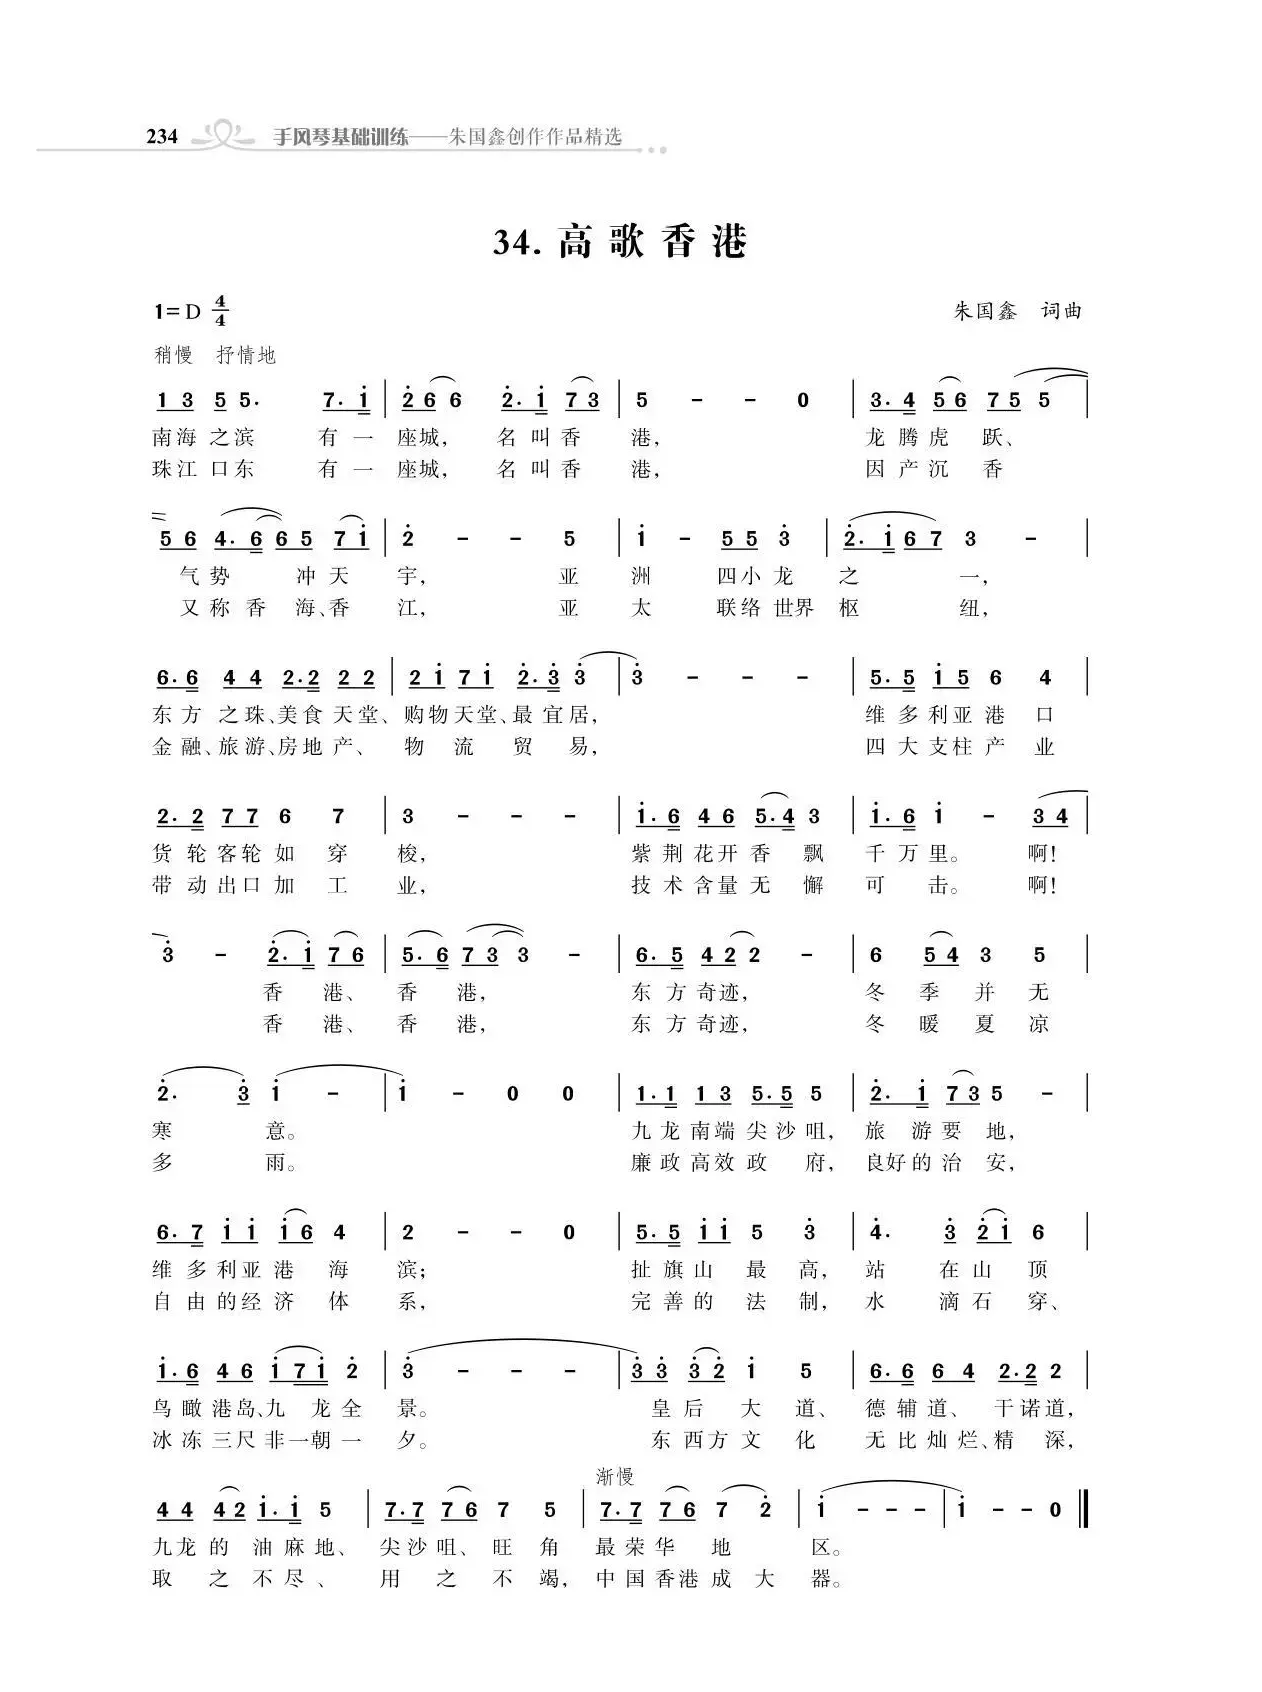 赞颂34个省份组歌：高歌香港（朱国鑫创作）